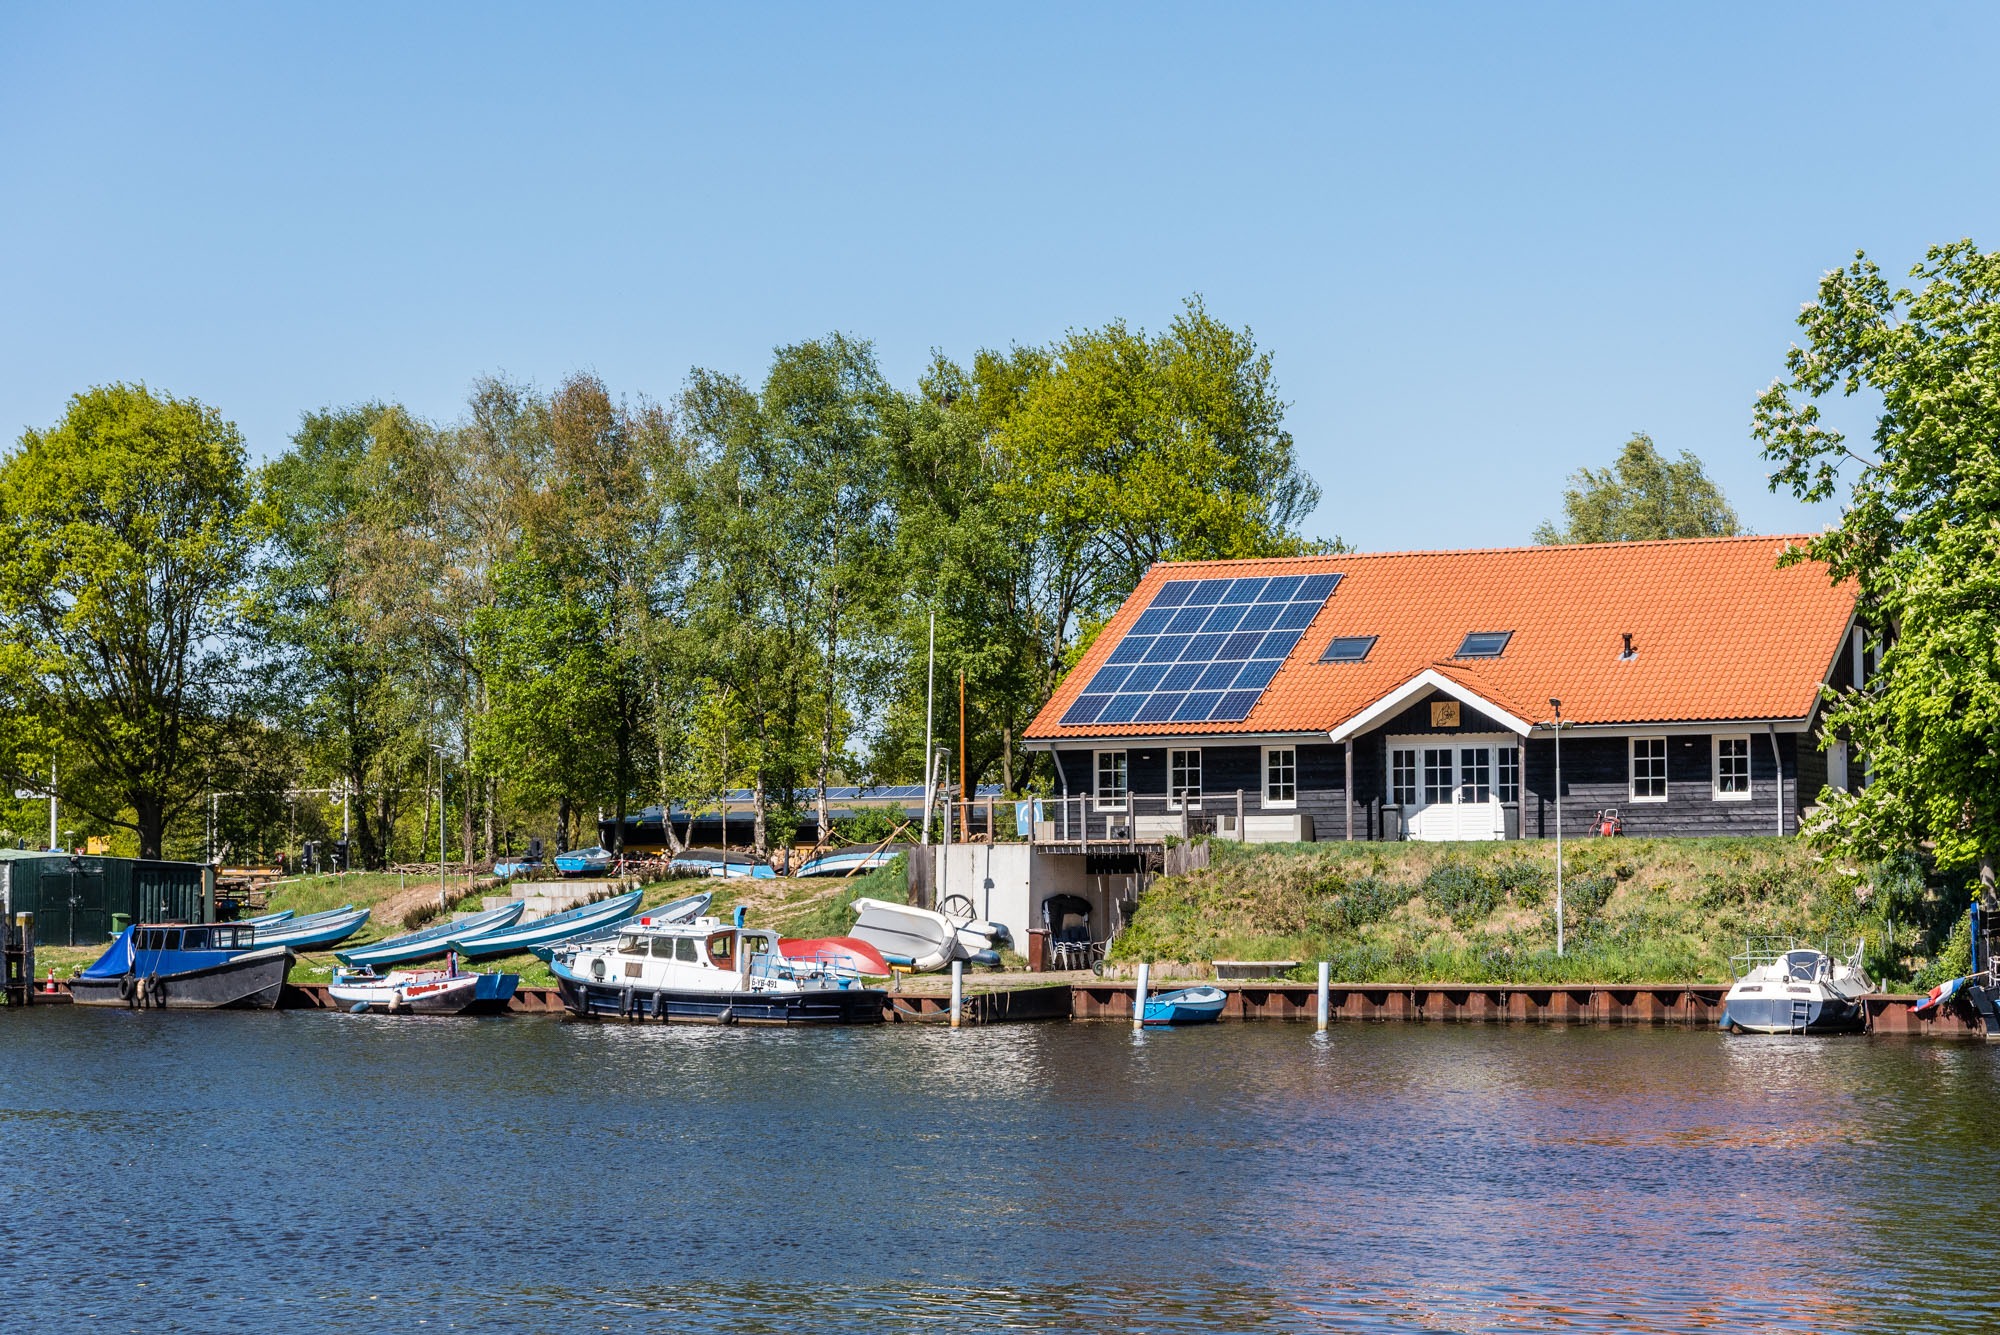 gebouw van de Karel Doormangroep vanaf de overkant van het water gezien met boten op de wal, veel groen rondom en zonnepanelen op het dak